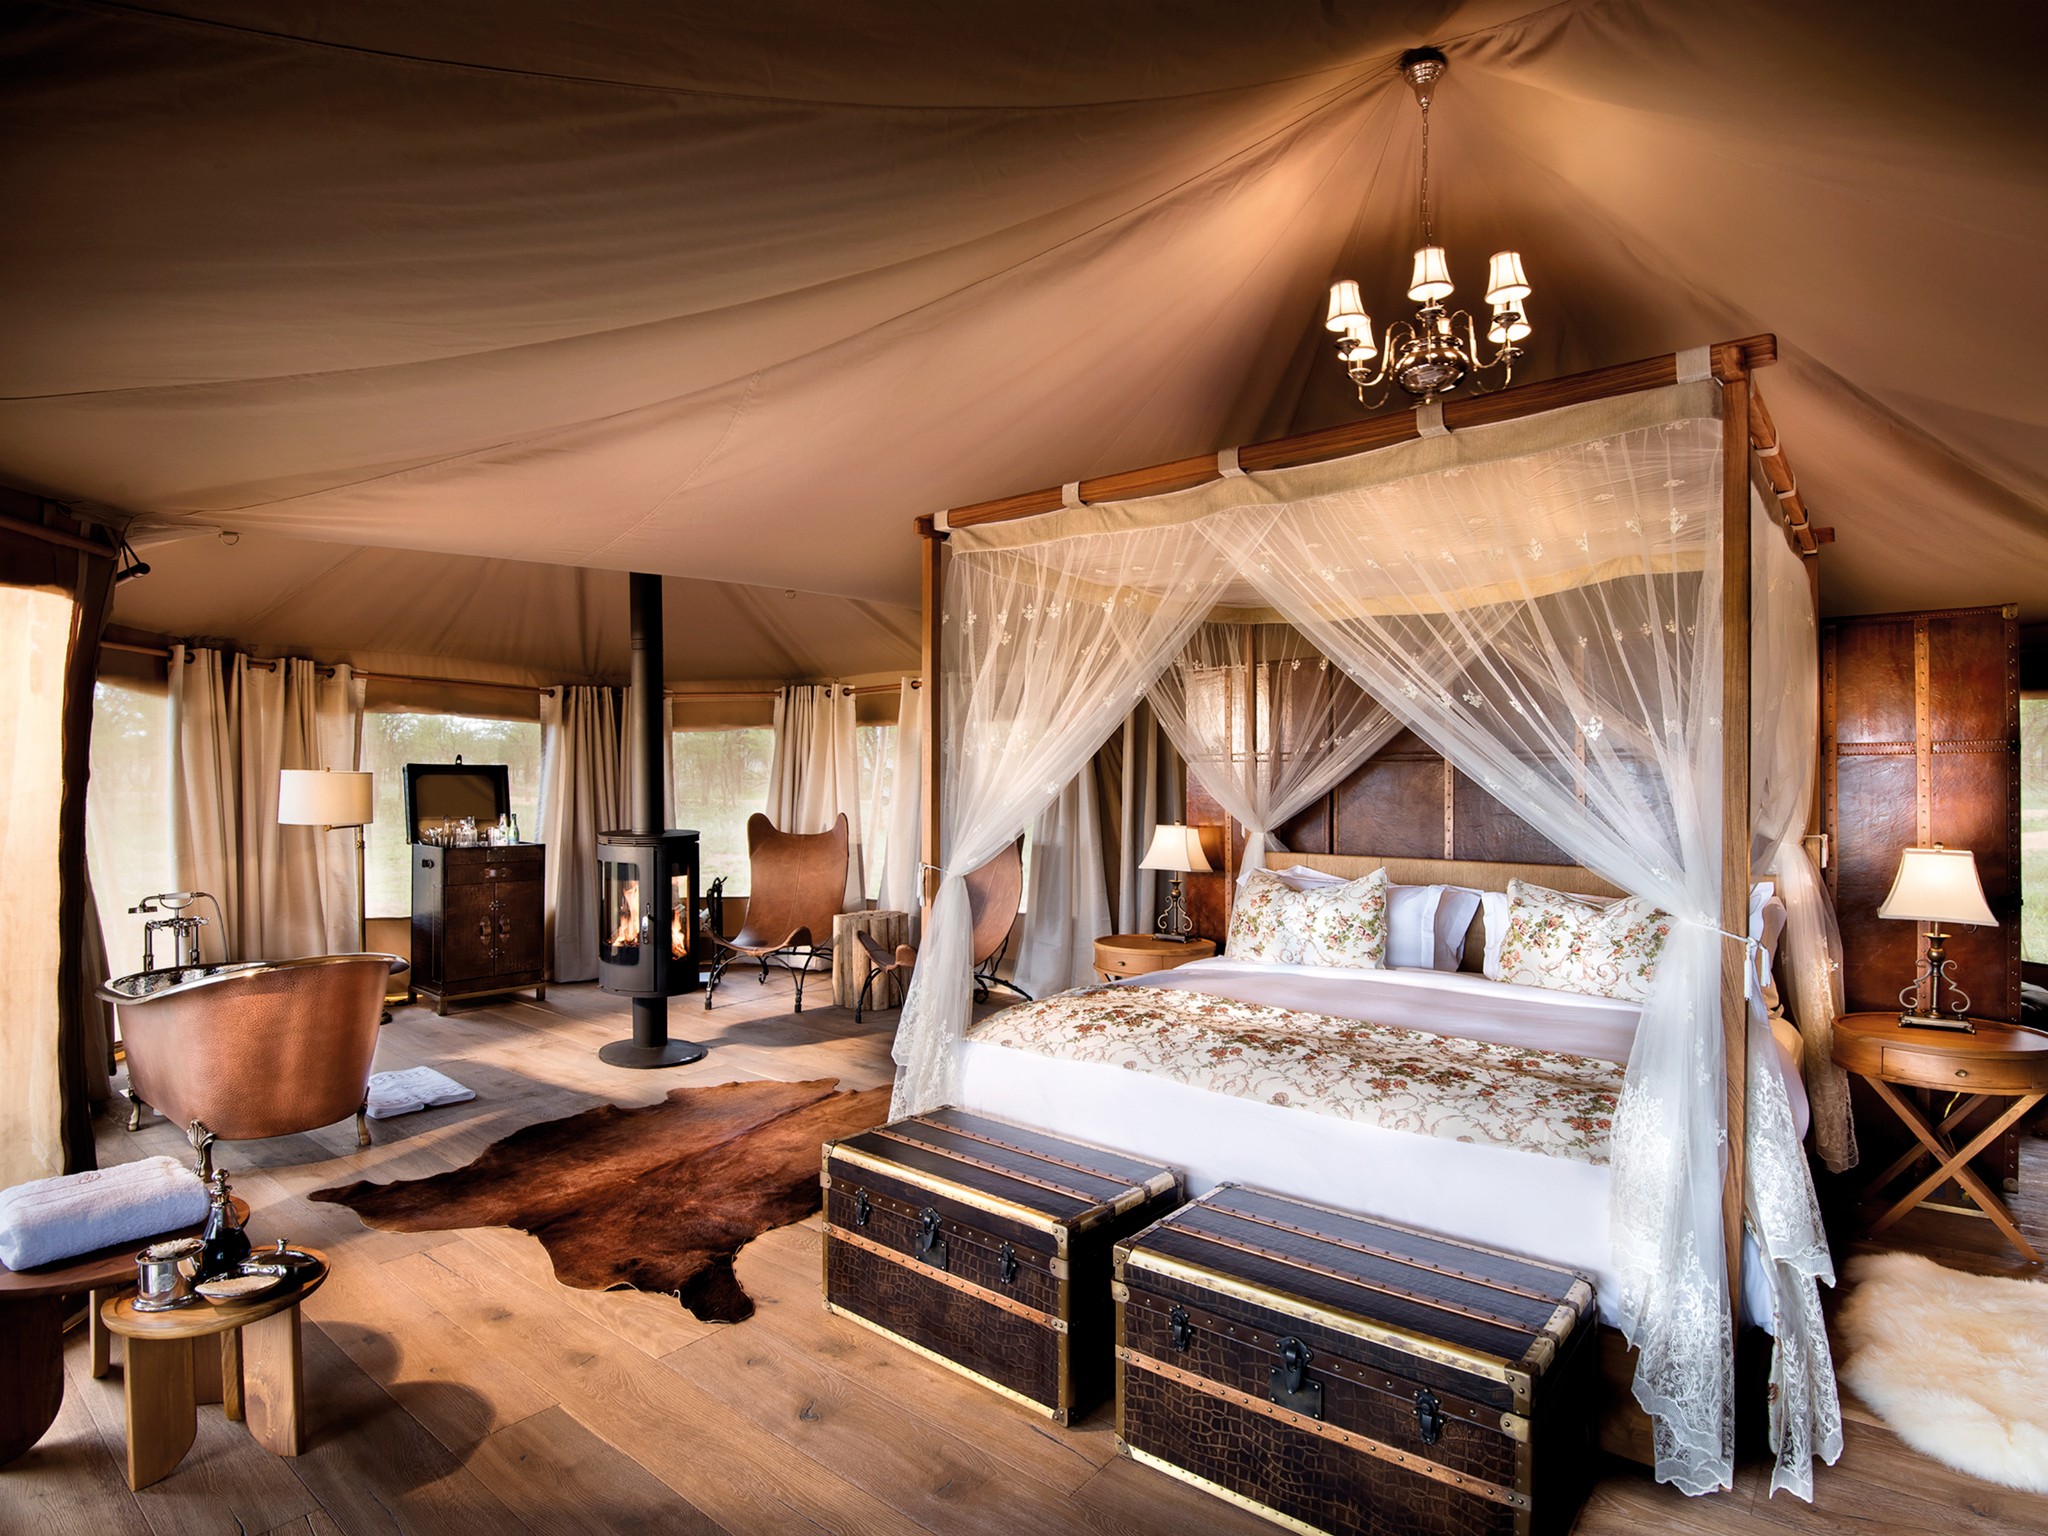 99%的人不知道东非大草原上还藏着这么惊艳的帐篷酒店